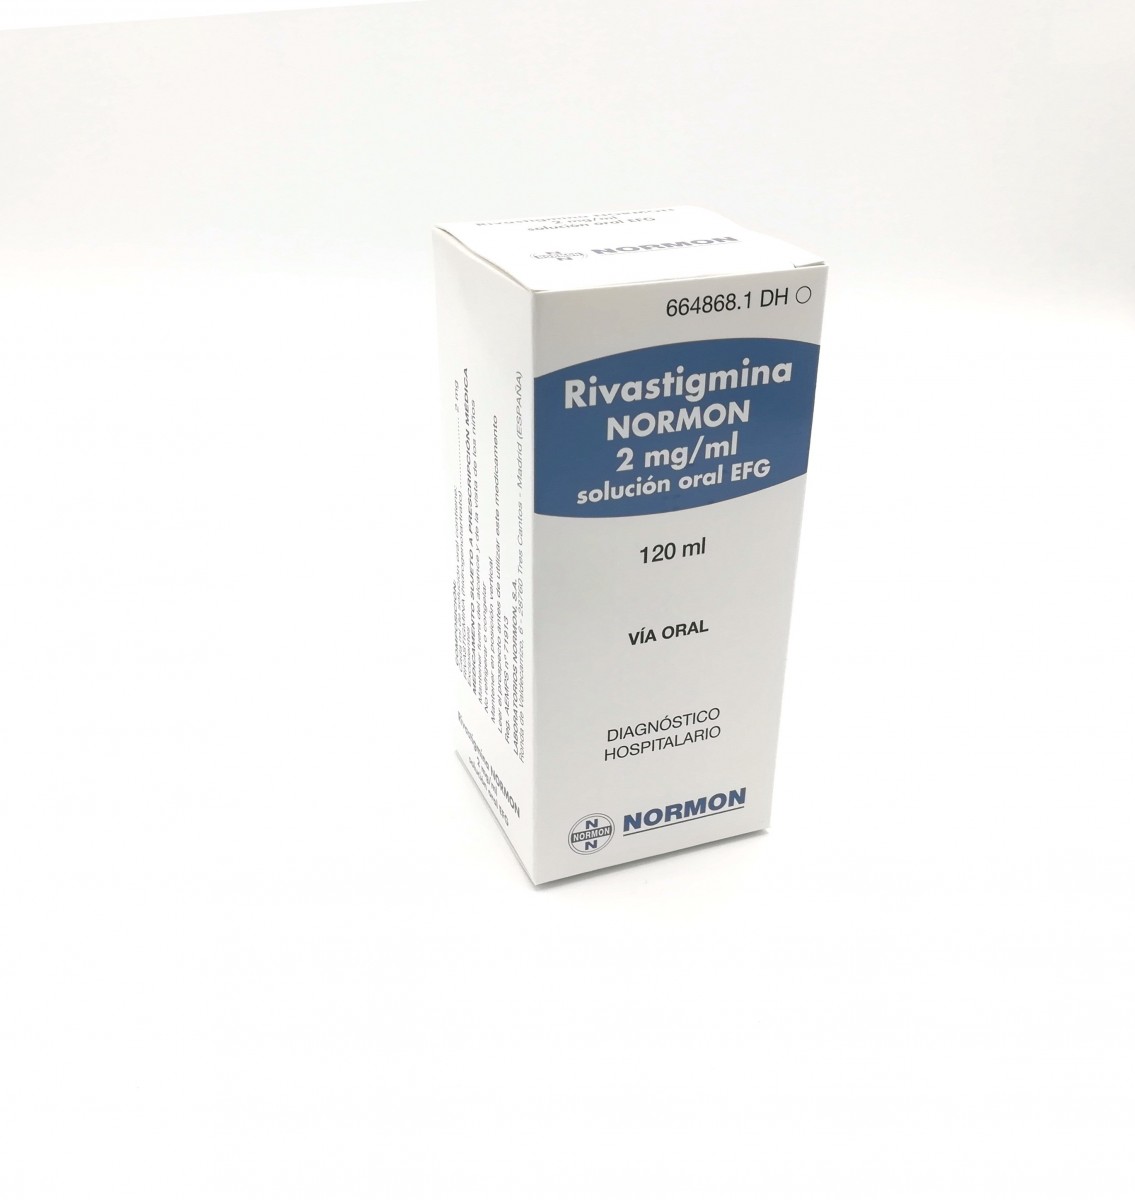 RIVASTIGMINA NORMON 2 mg/ml SOLUCION ORAL EFG, 1 frasco de 120 ml fotografía del envase.